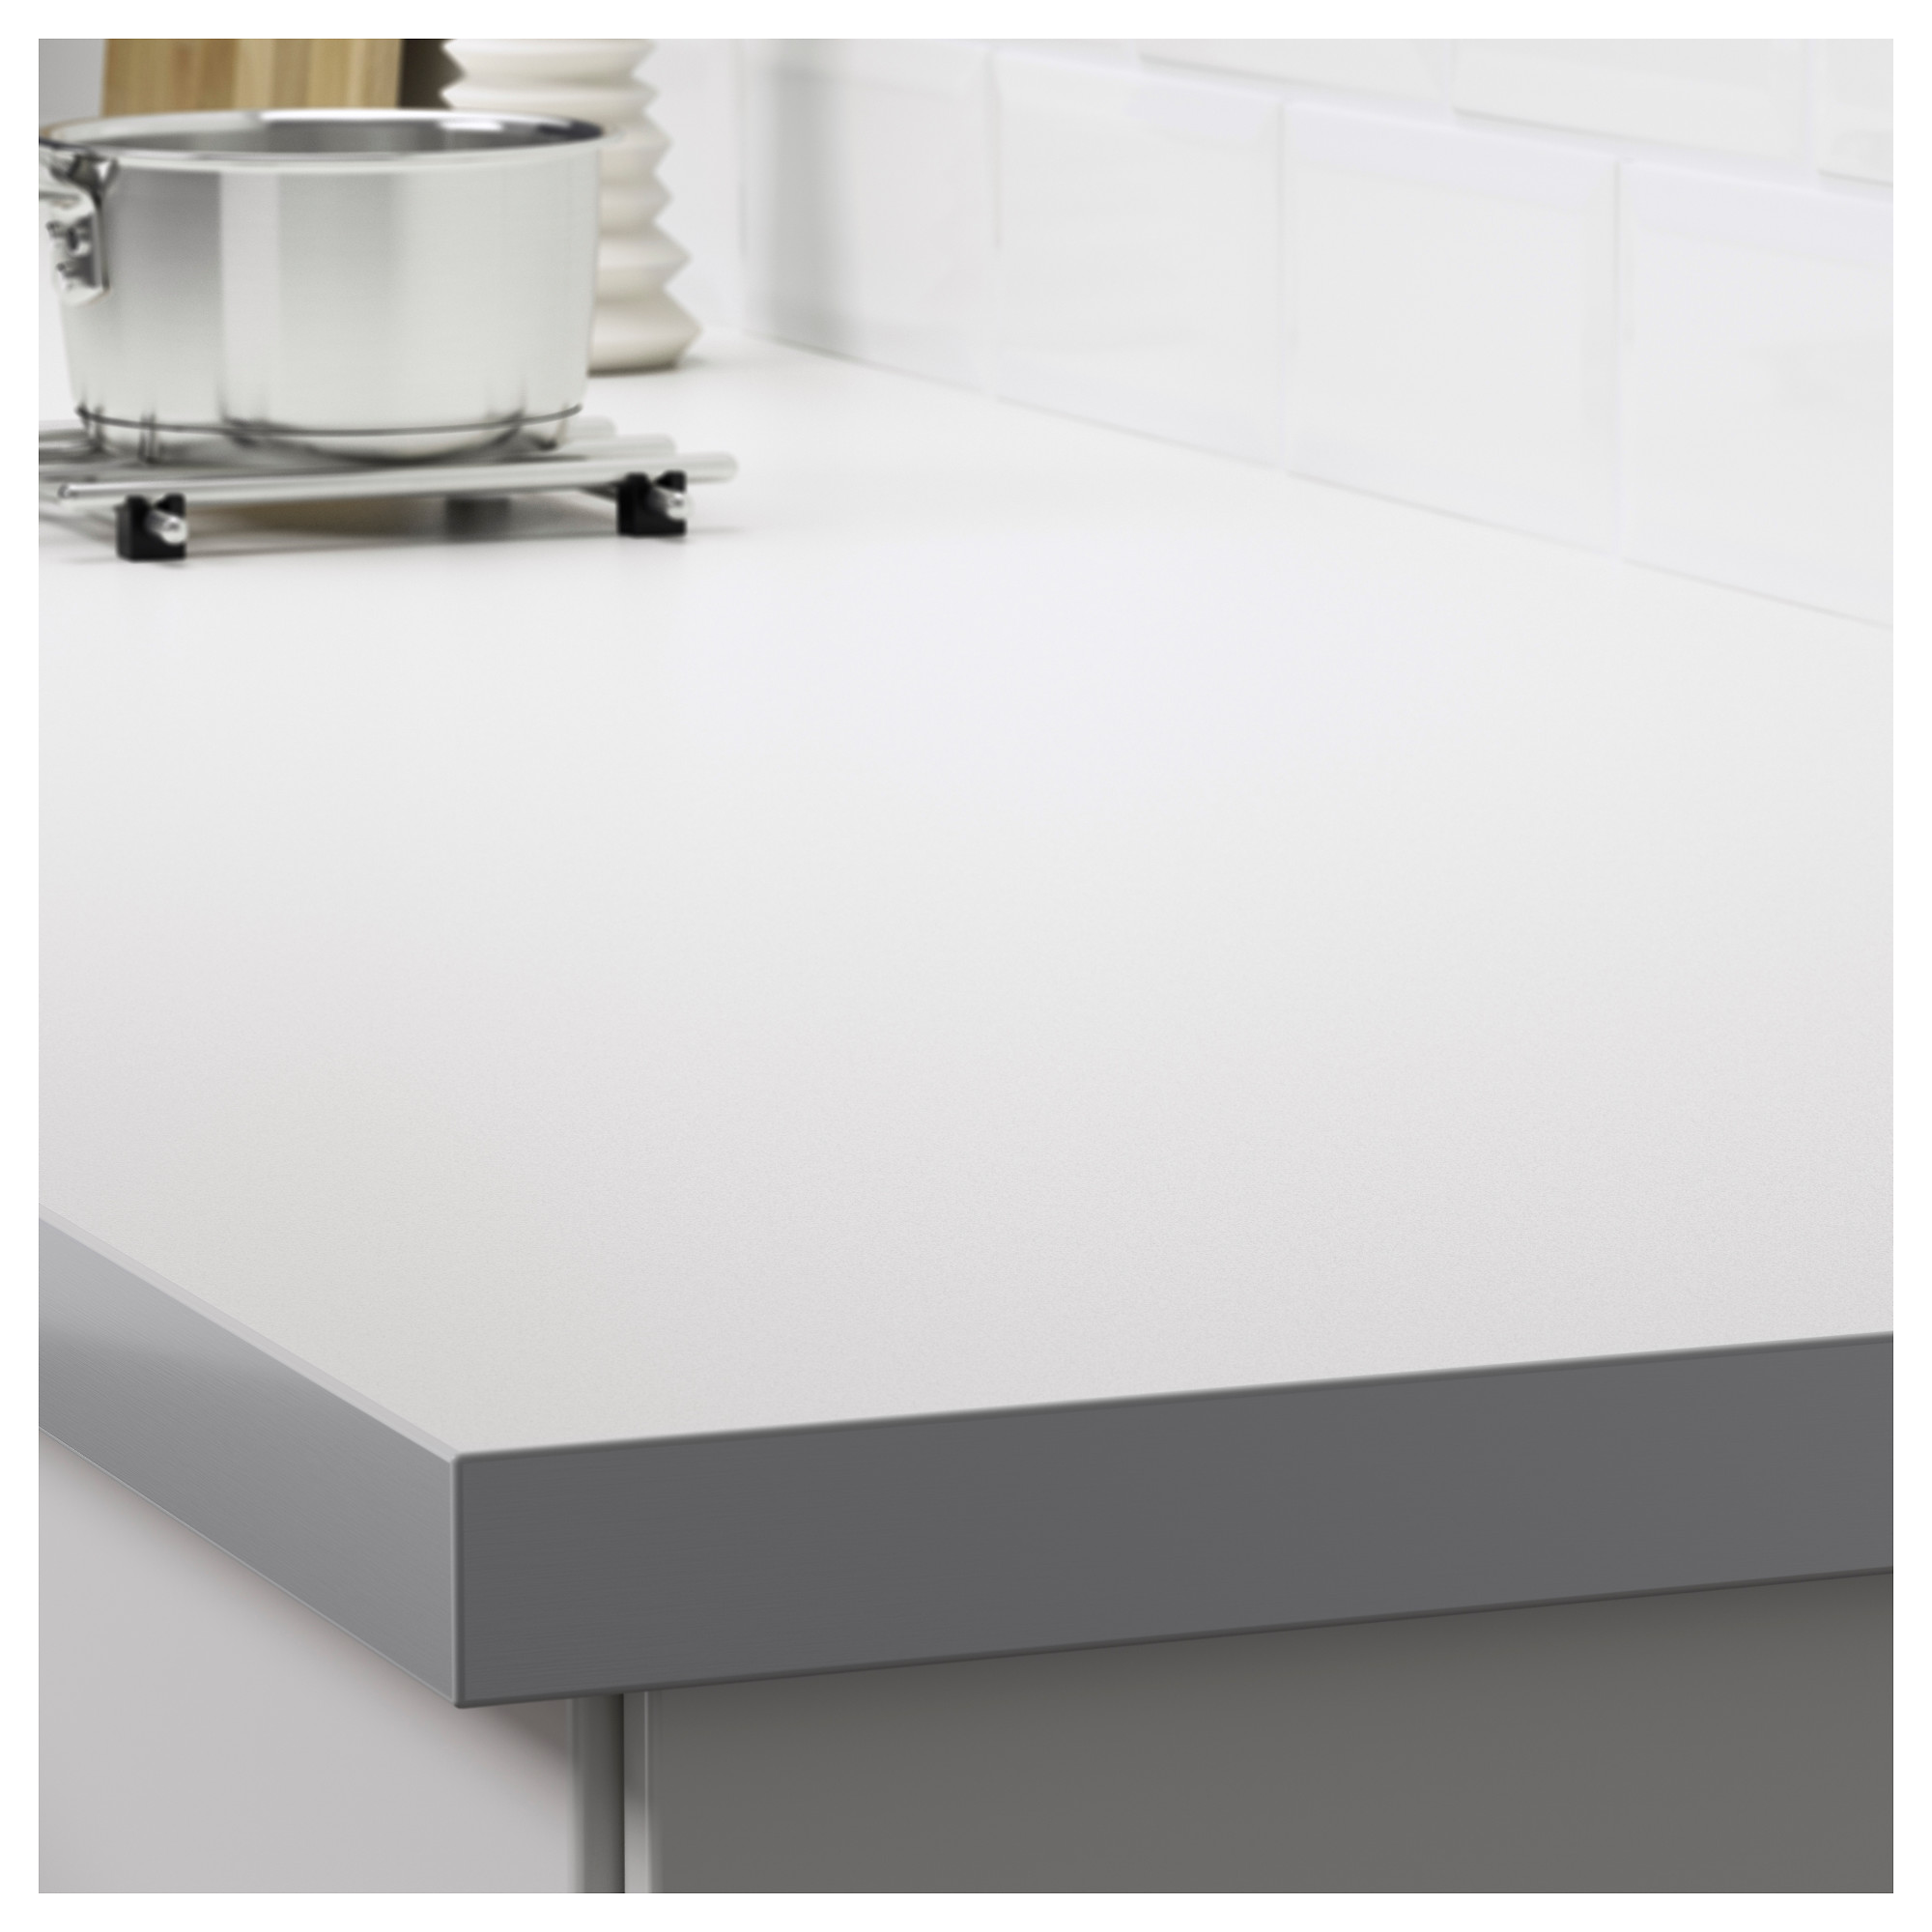 H LLESTAD permukaan meja  dapur dua sisi putih kesan 